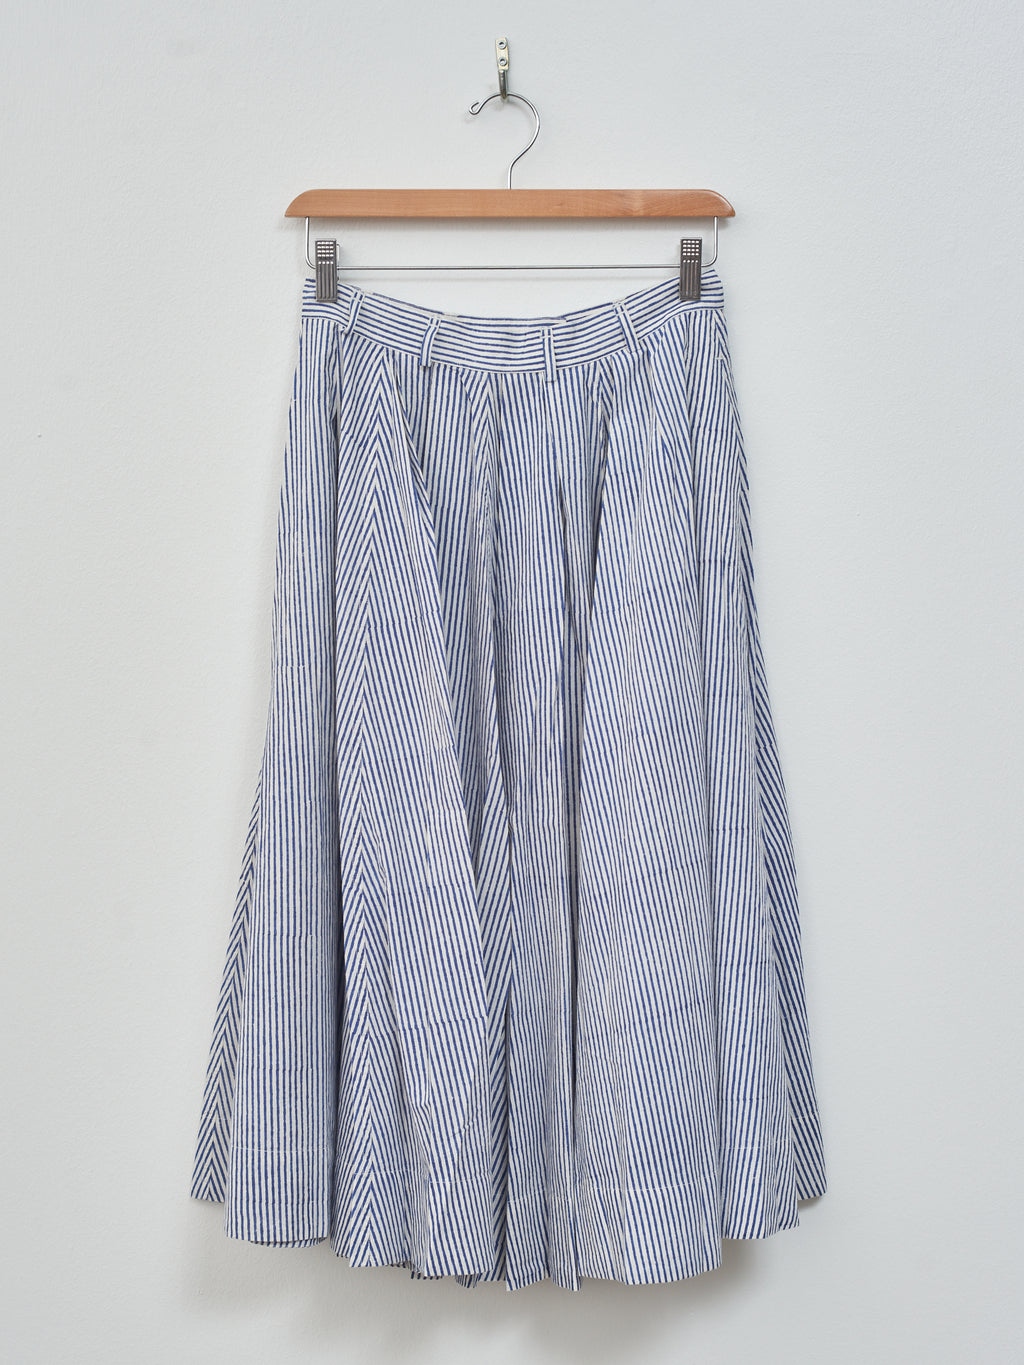 Namu Shop - Jan Machenhauer Schrol Skirt - Blue